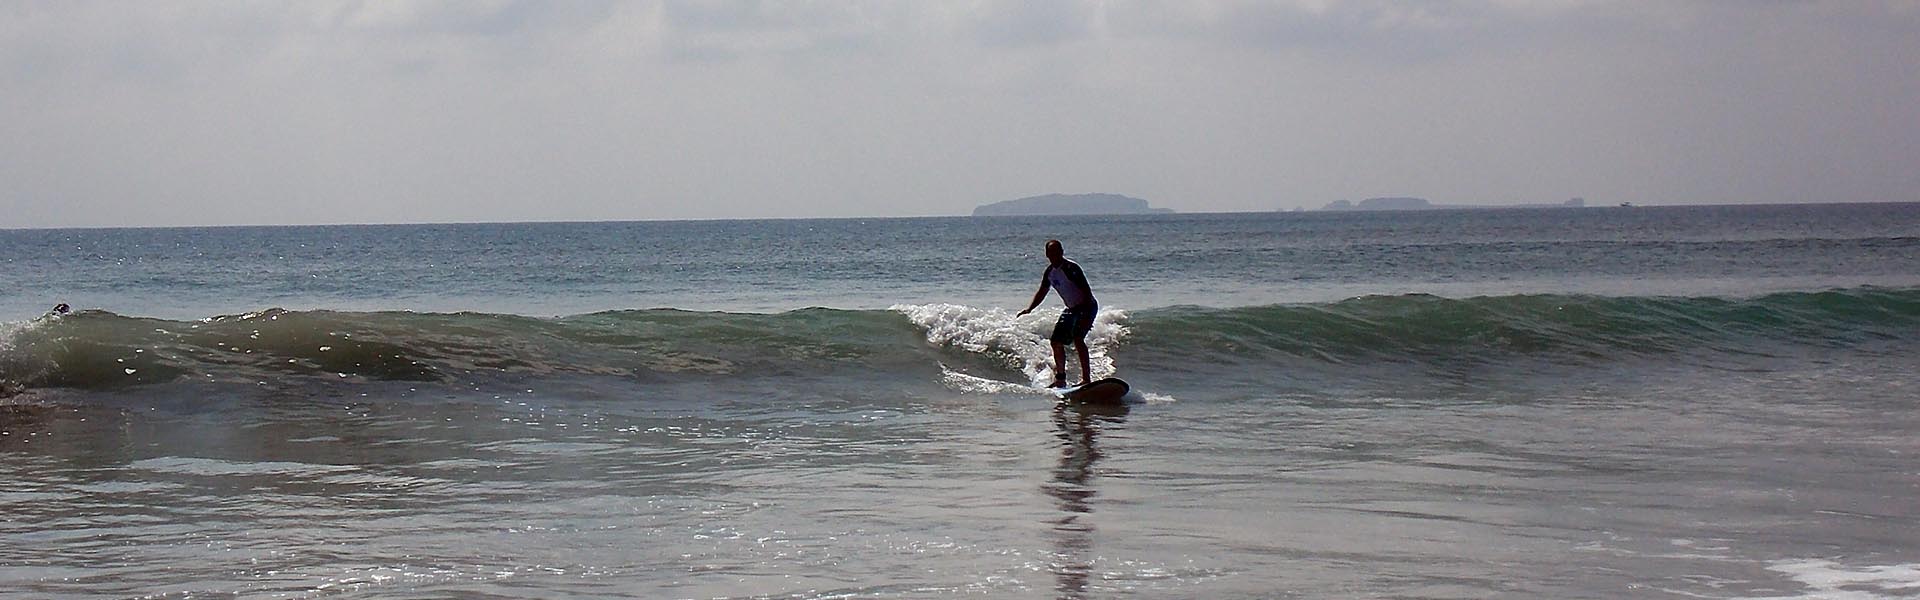 Clases de Surf Puerto Vallarta | Escuela de Surf Puerto Vallarta | Guias de Surf Puerto Vallarta